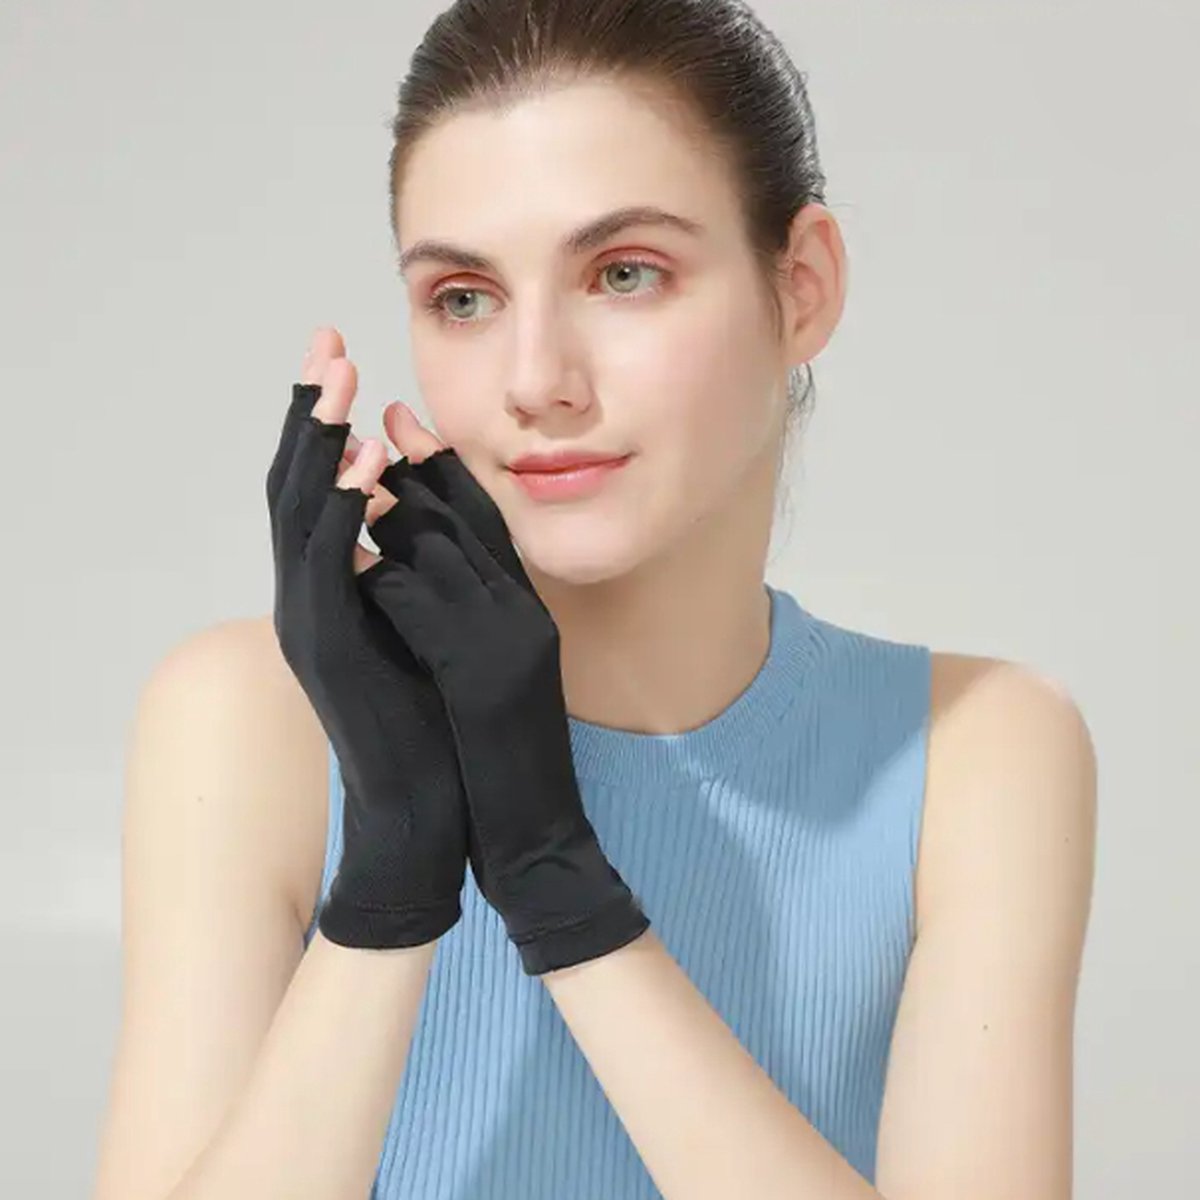 1 paire de gants à ongles UV, Protection UV, sans doigts, pour